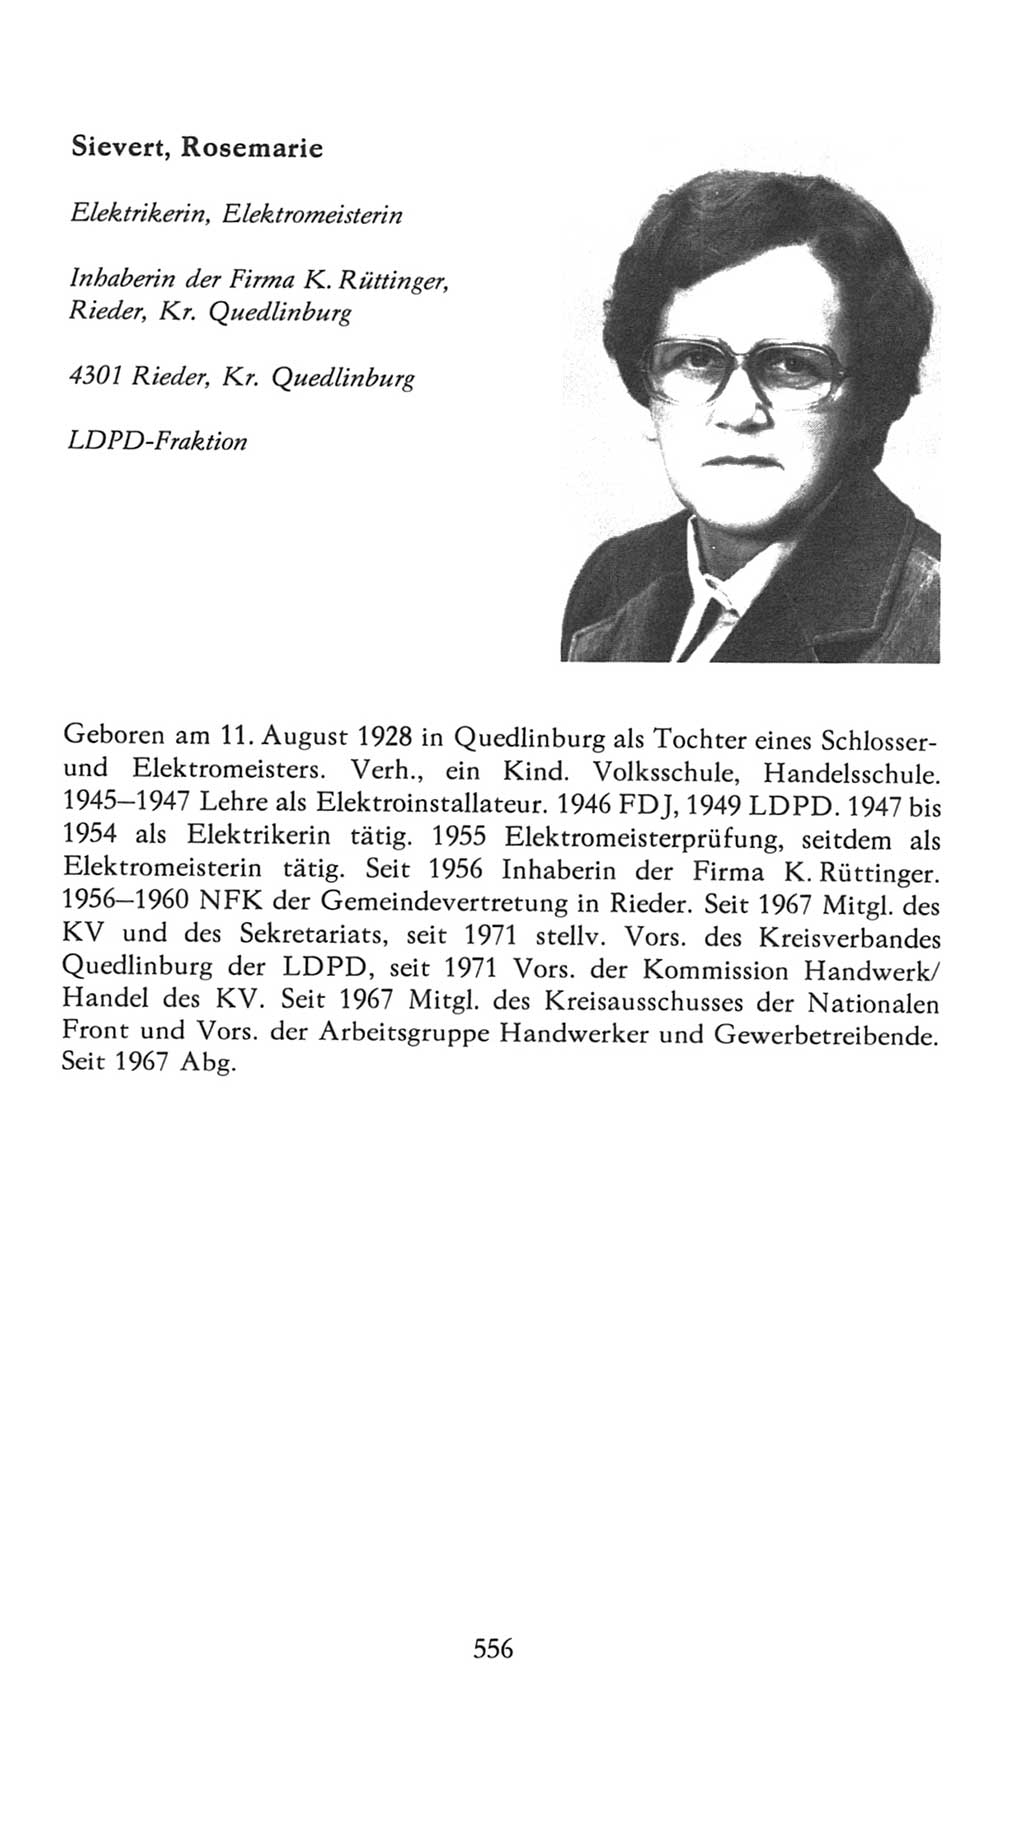 Volkskammer (VK) der Deutschen Demokratischen Republik (DDR), 7. Wahlperiode 1976-1981, Seite 556 (VK. DDR 7. WP. 1976-1981, S. 556)